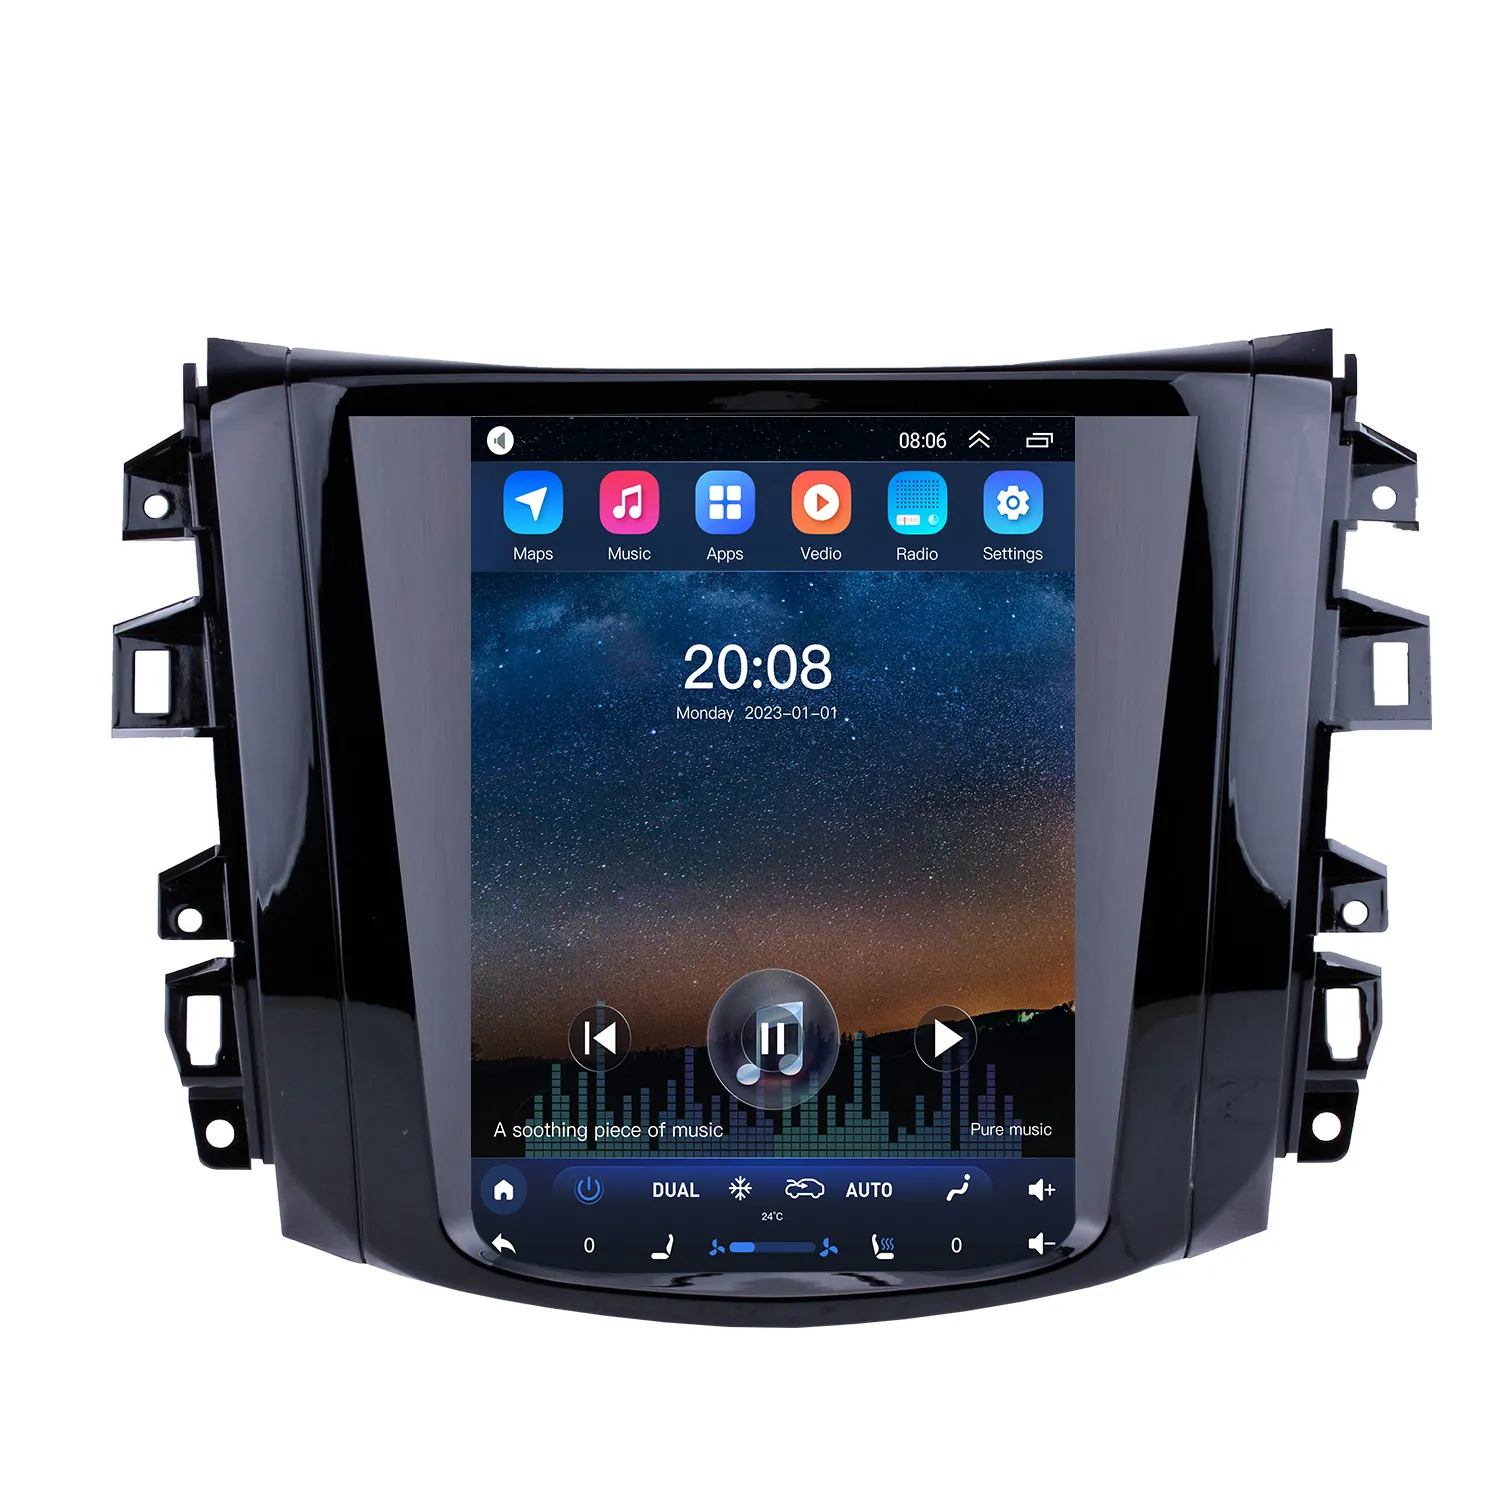 9.7 "Android 10.0 Auto Radio Voor 2018 Nissan Navara Terra Hd Touchscreen Navigatie Met Spiegel Link Muziek Wifi Carplay Gps